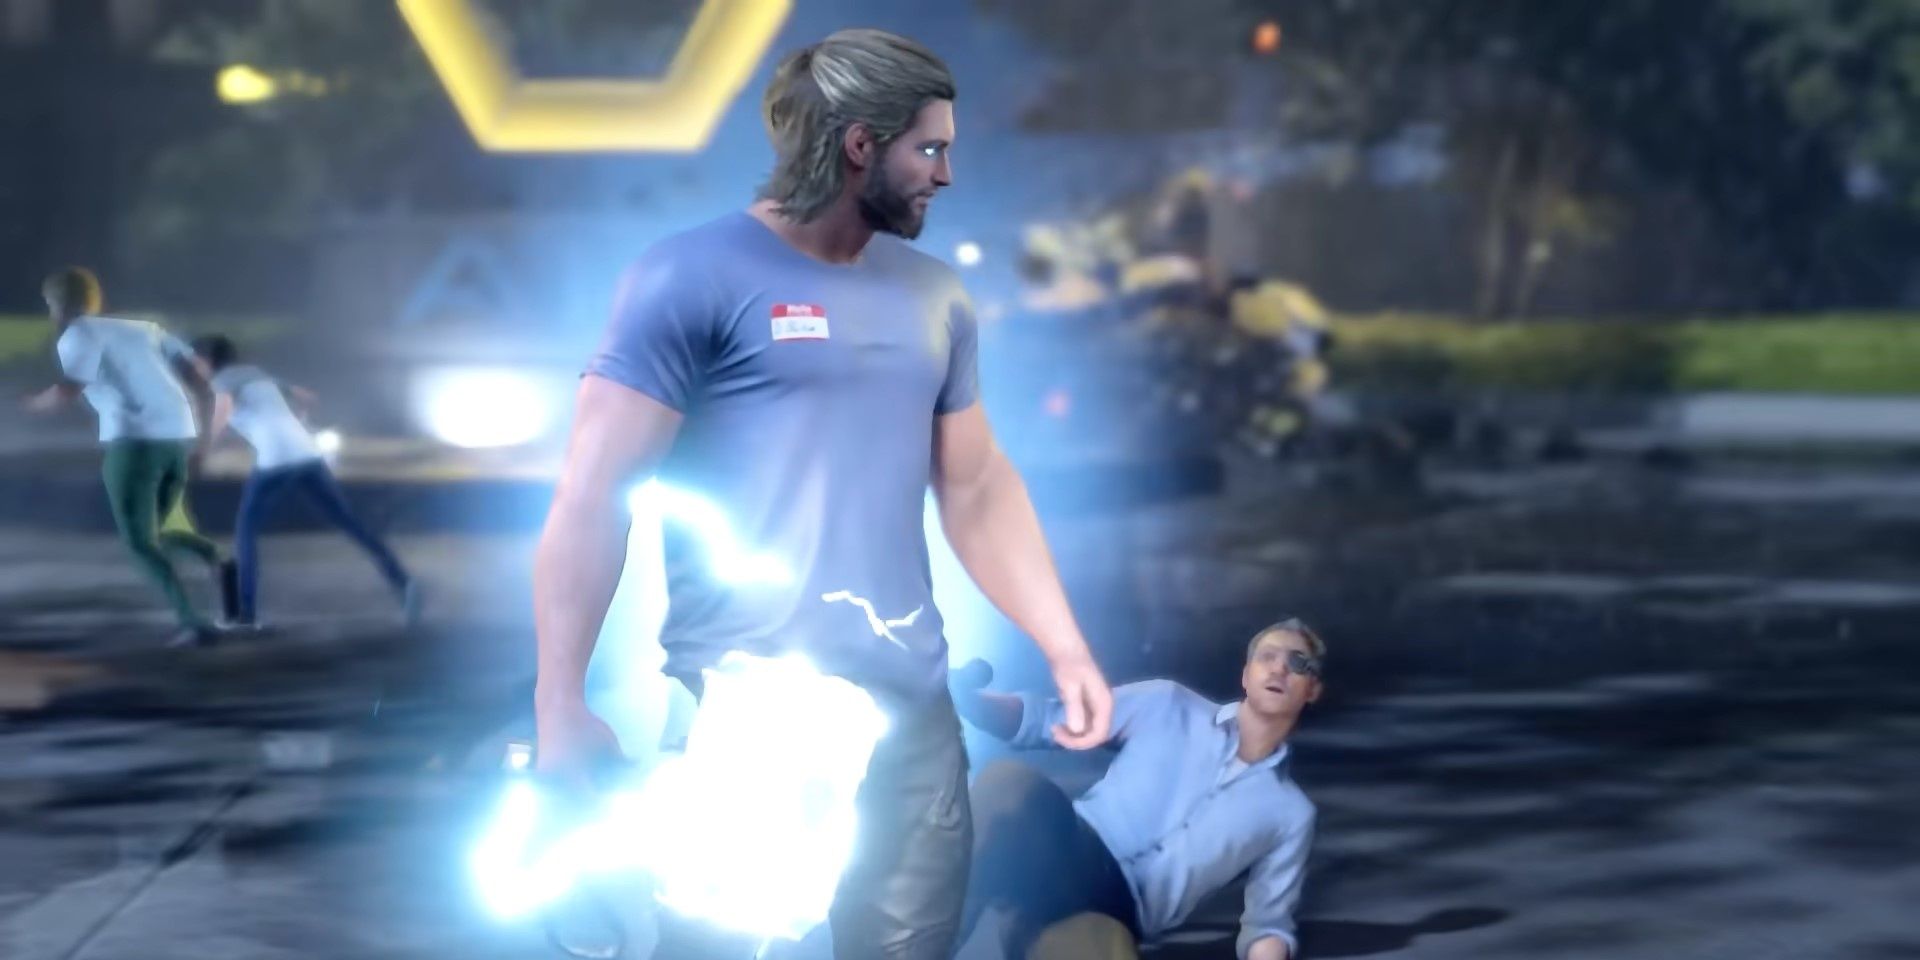 Thor return with Mjolnir in Marvel's Avengers game